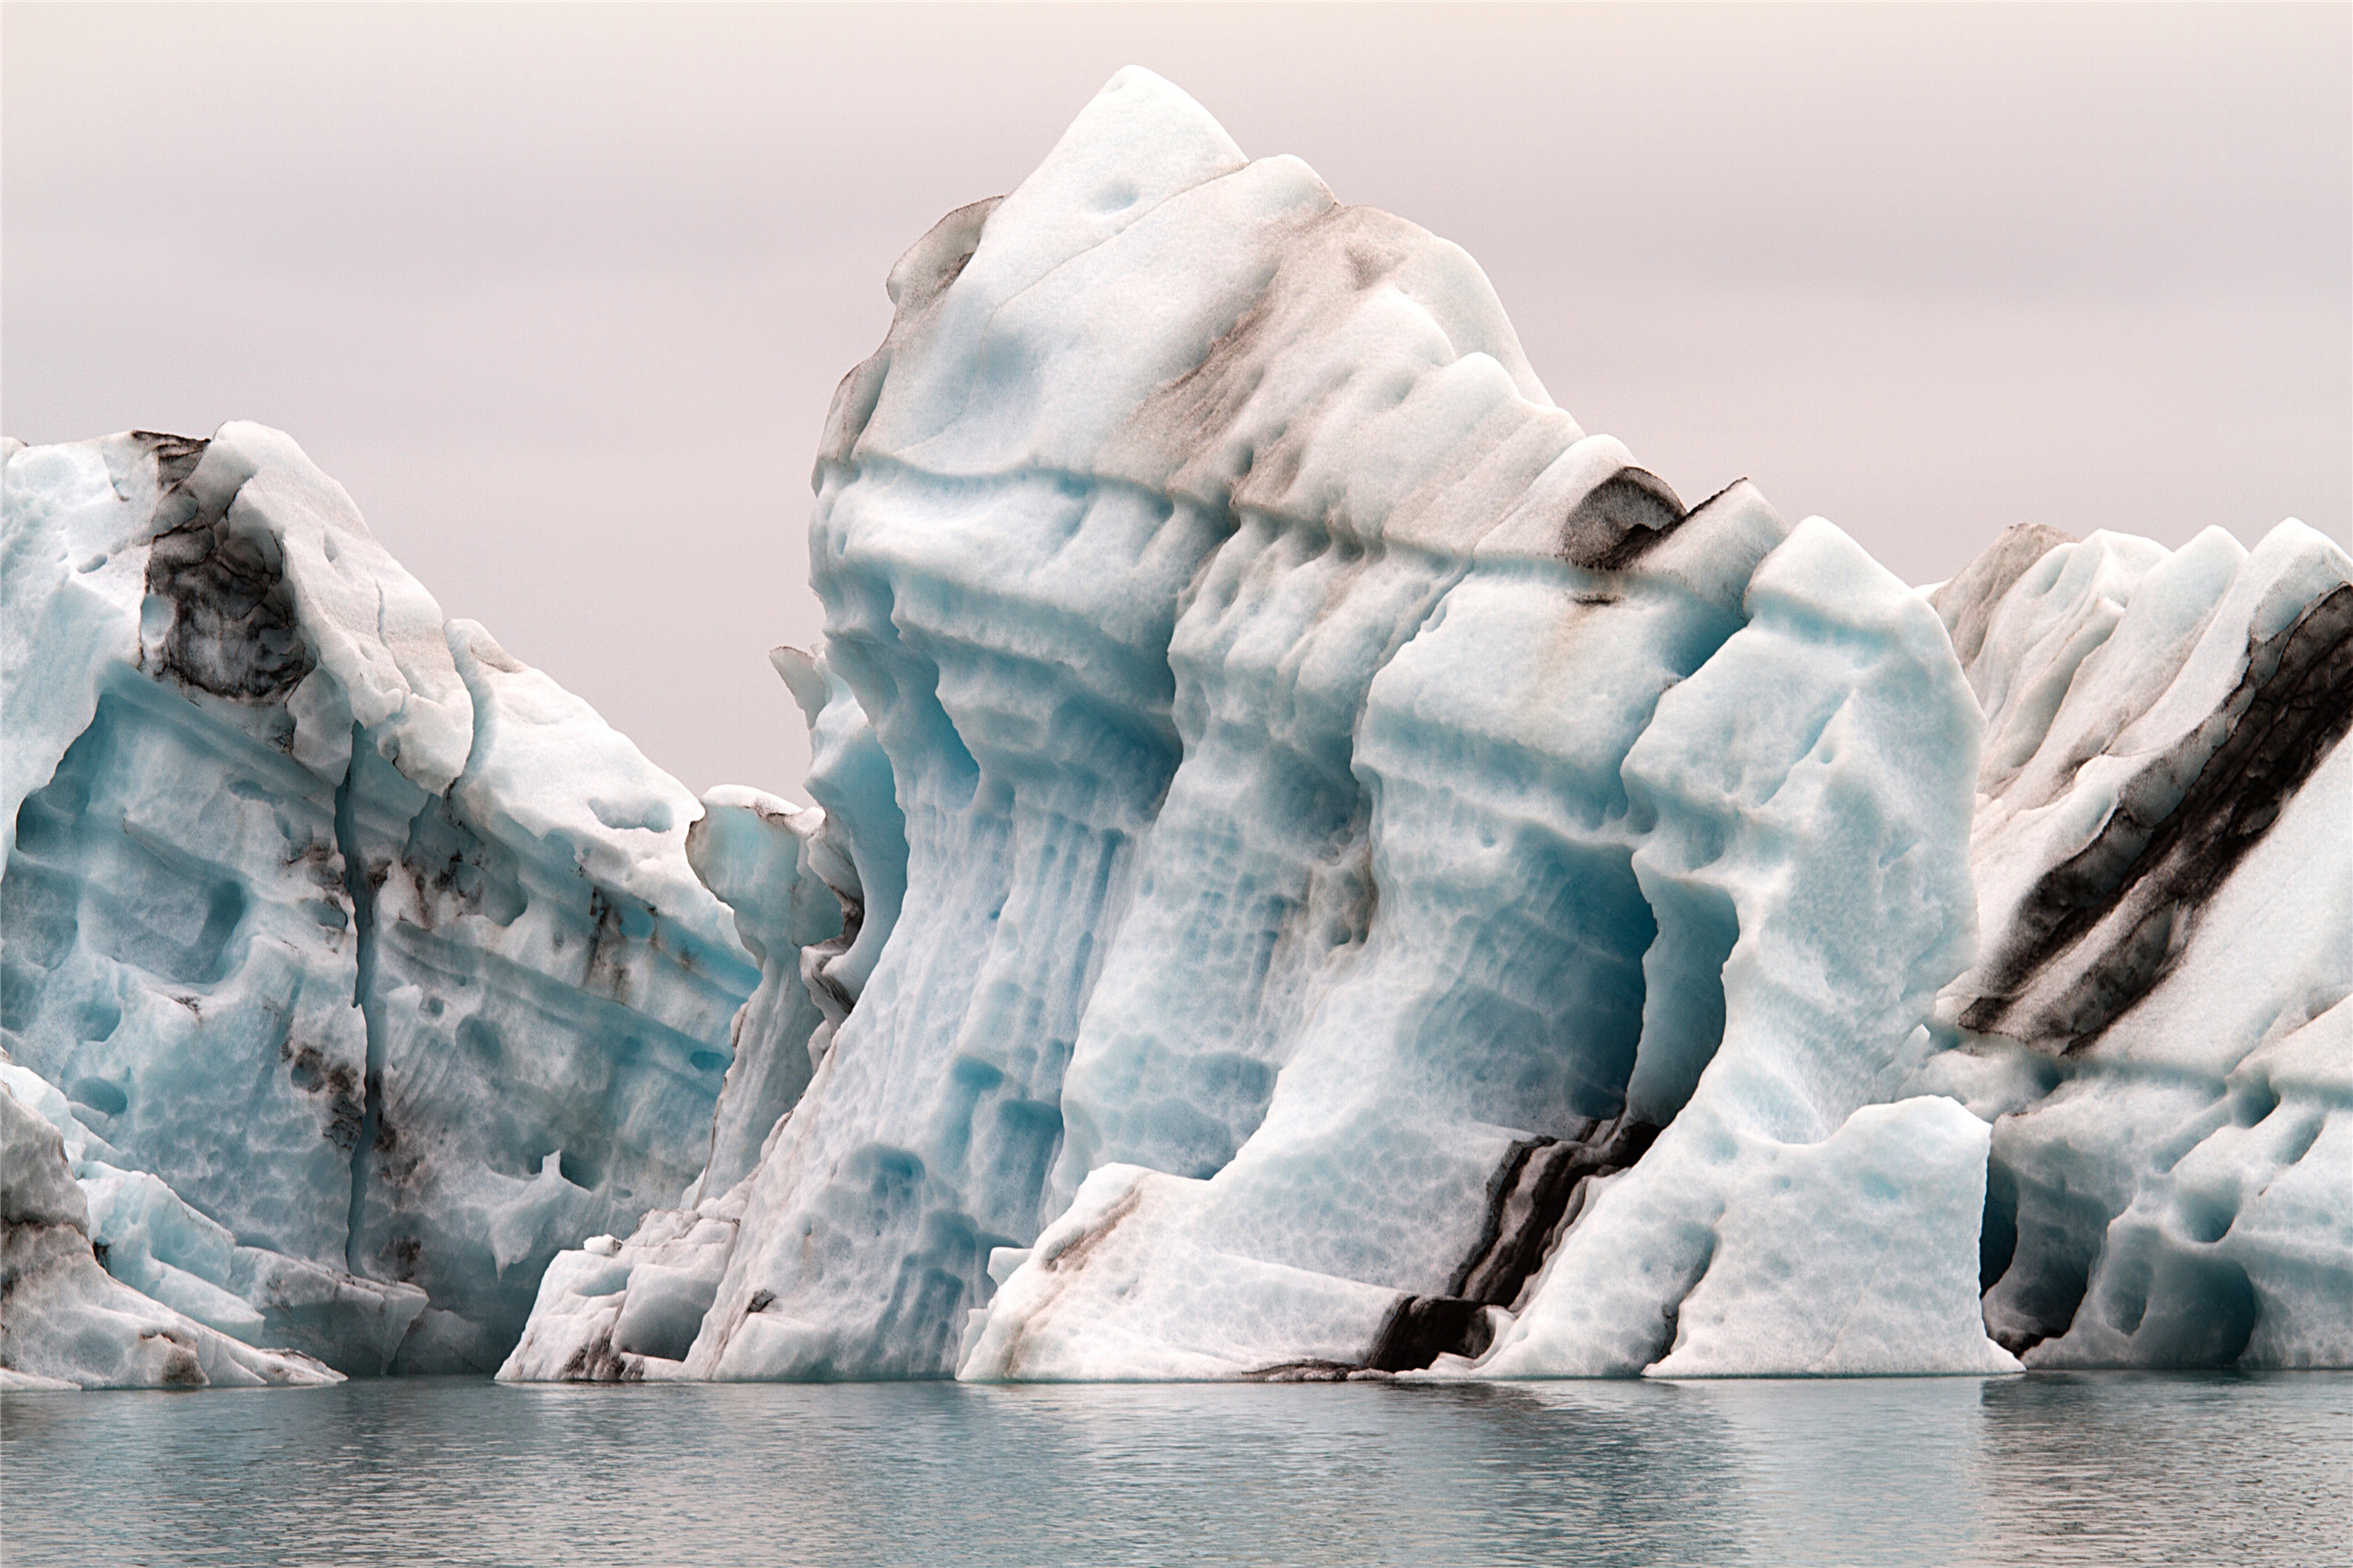 海水侵蚀下的冰川,黑白相间,像是在雕刻什么一样